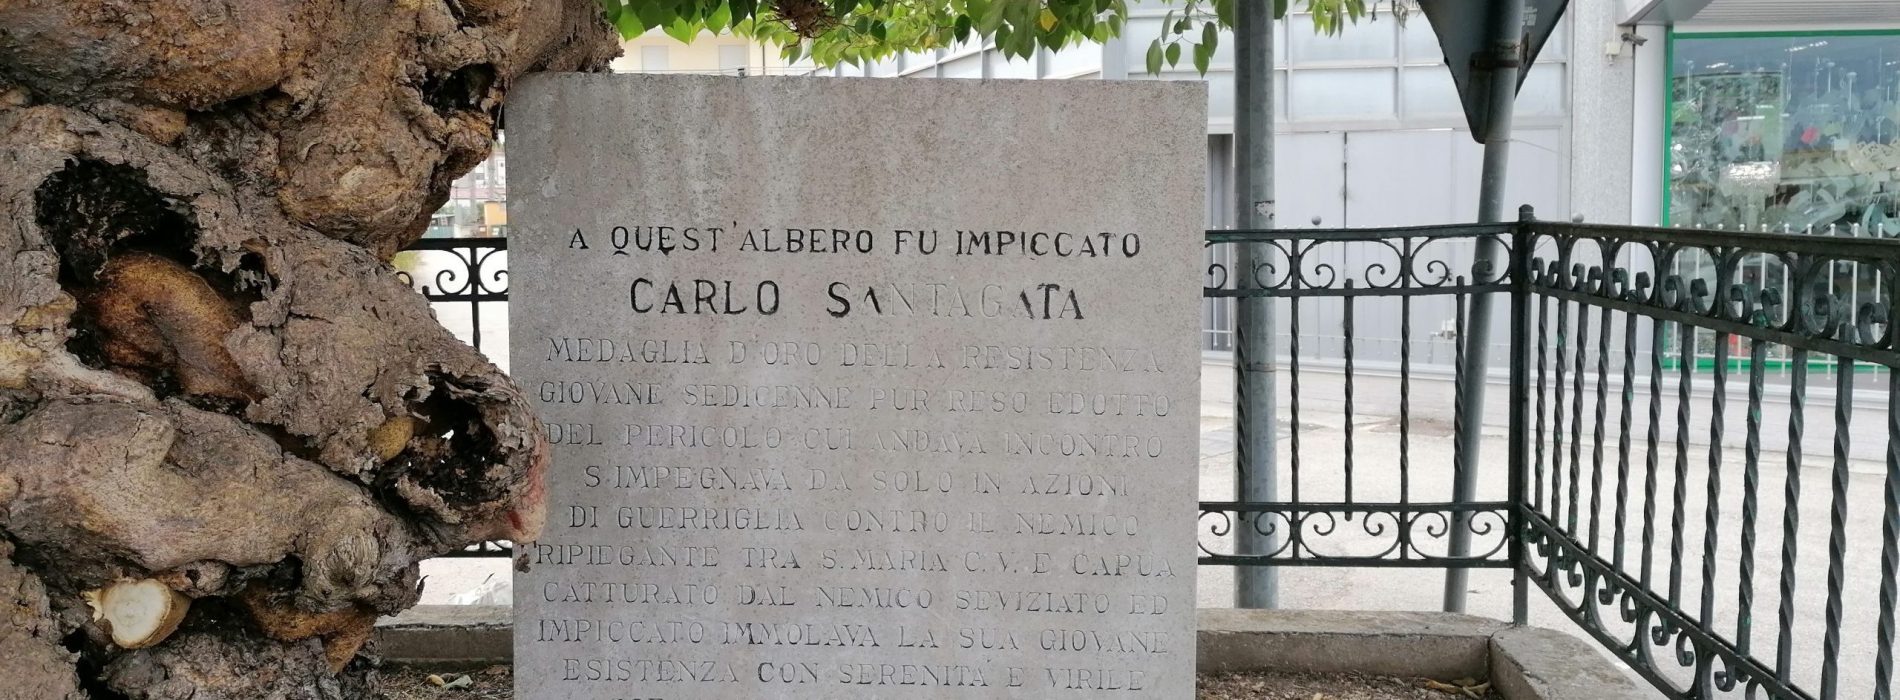 Un eroe della Resistenza, a Capua si ricorda Carlo Santagata